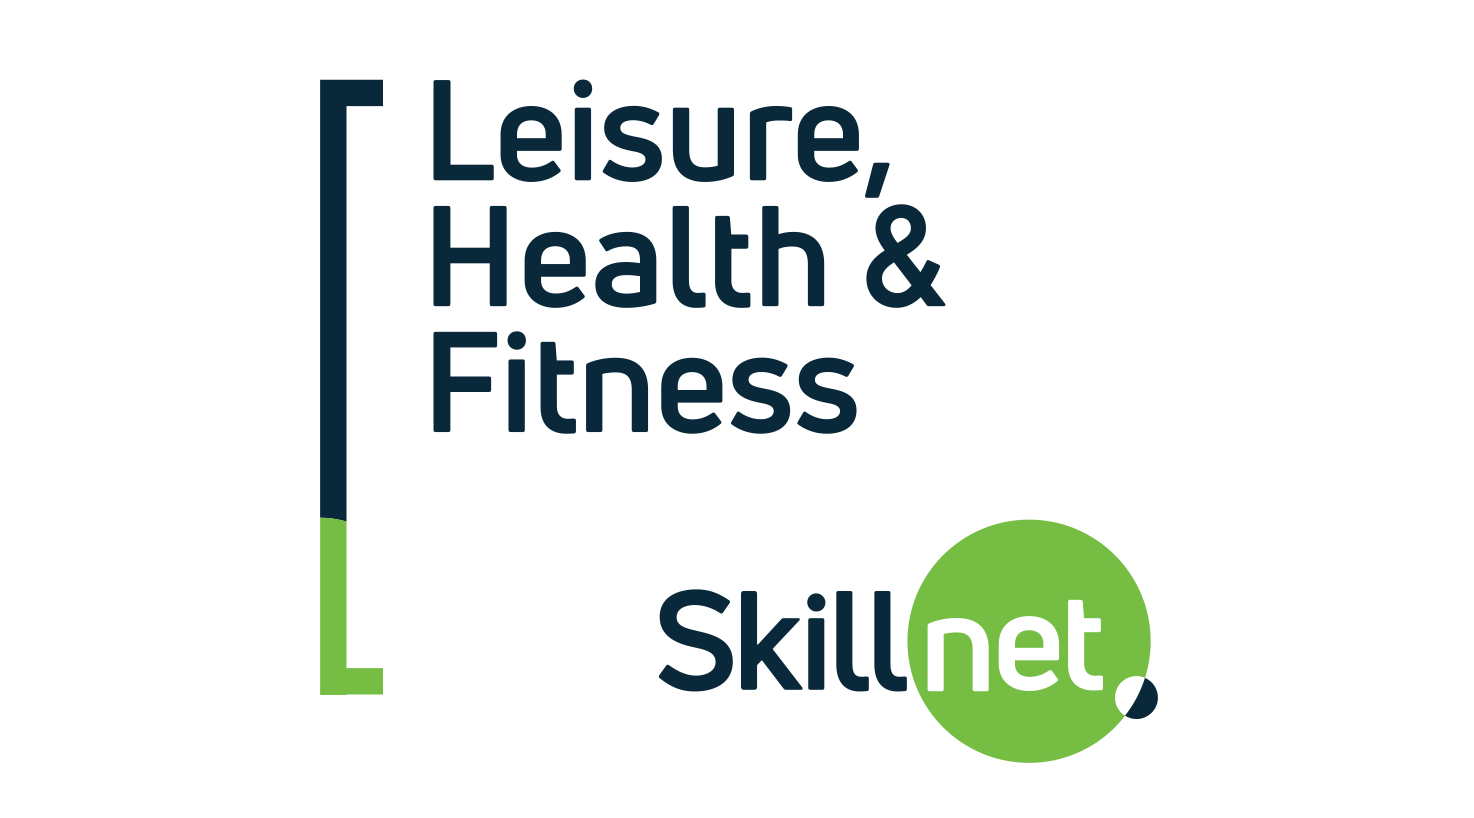 Leisure, Health & Fitness Skillnet